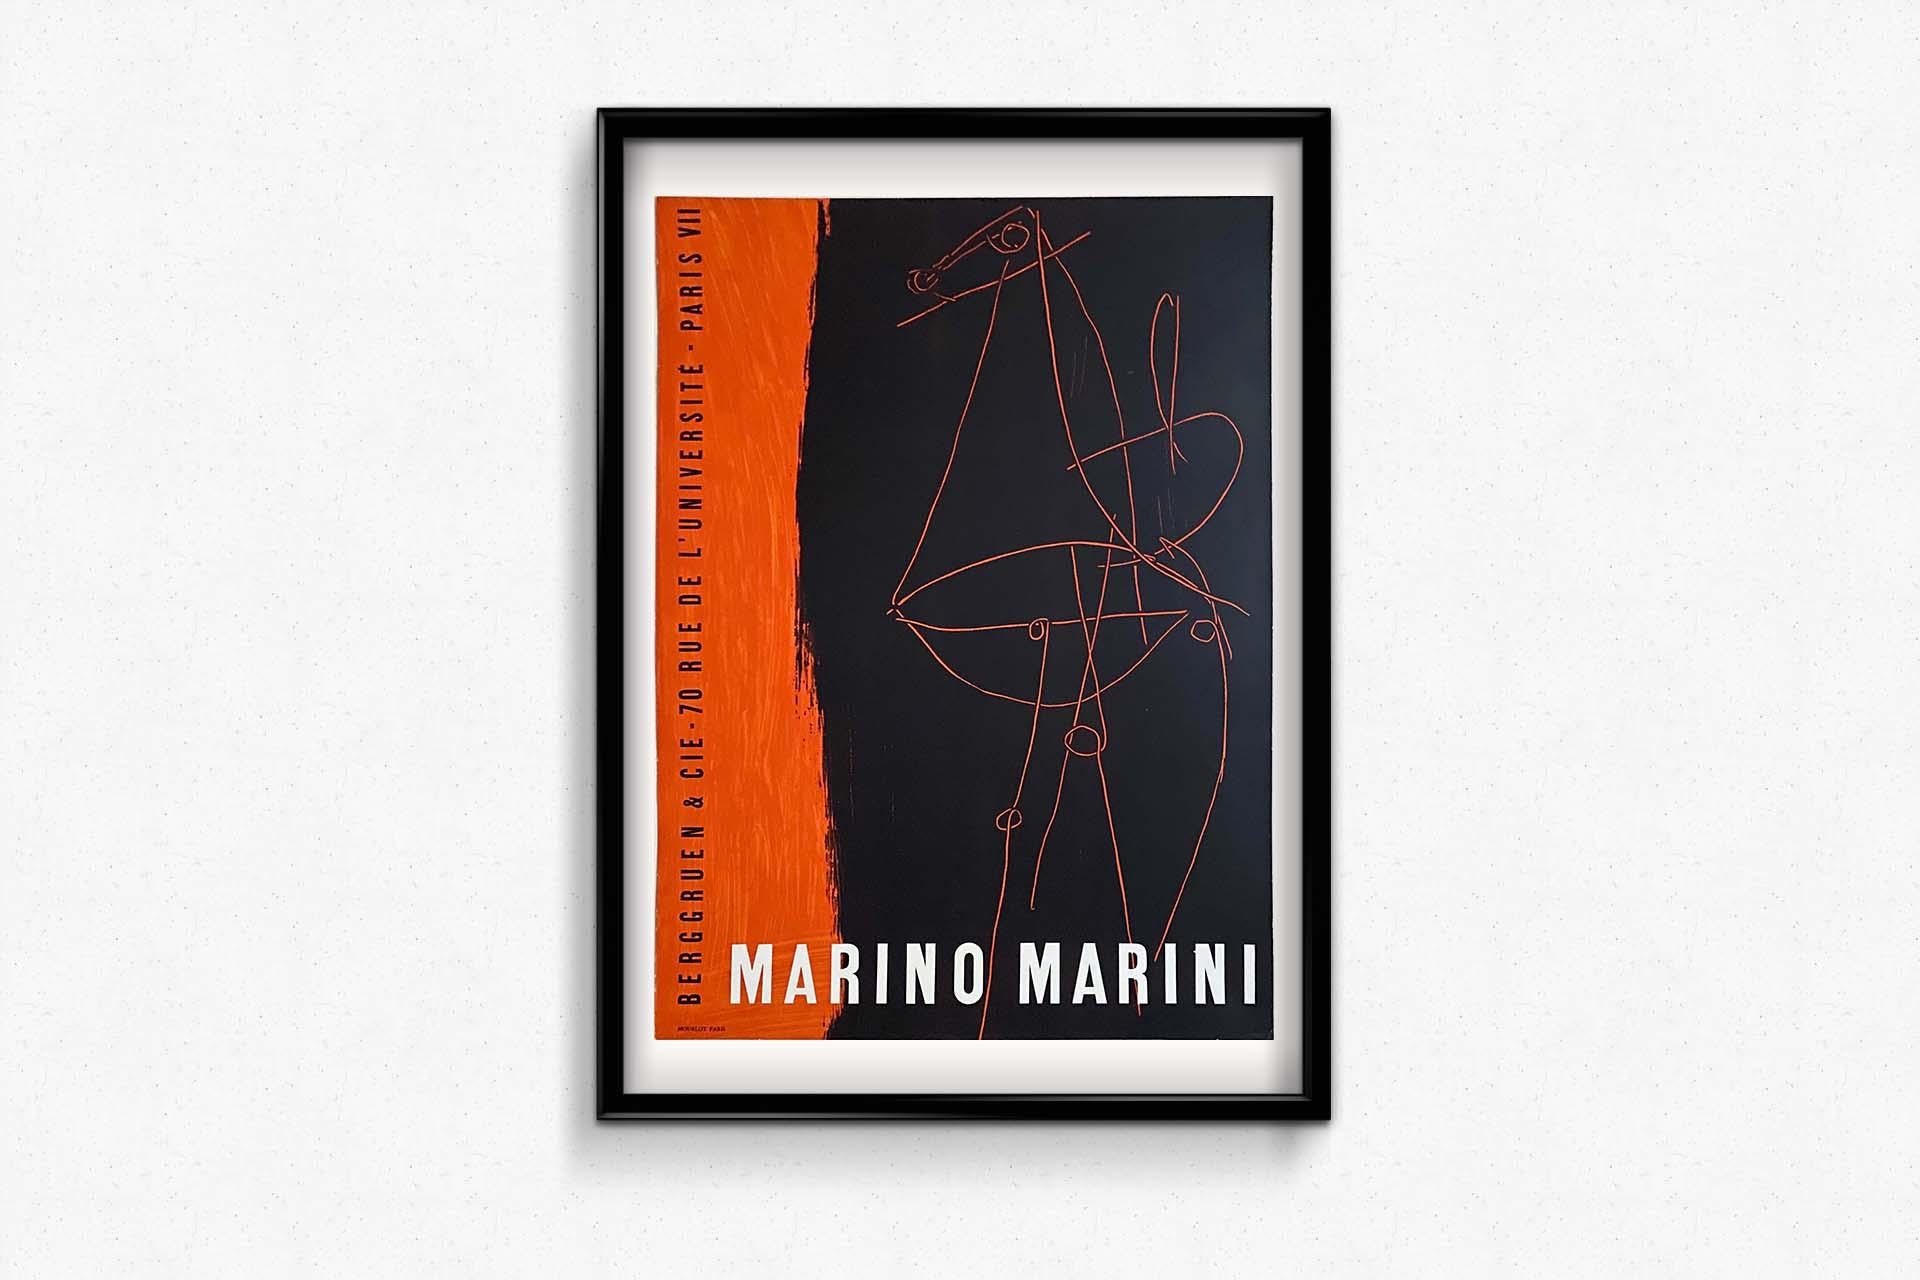 1955 Original exhibition poster of Marino Marini - Mourlot - Paris 3